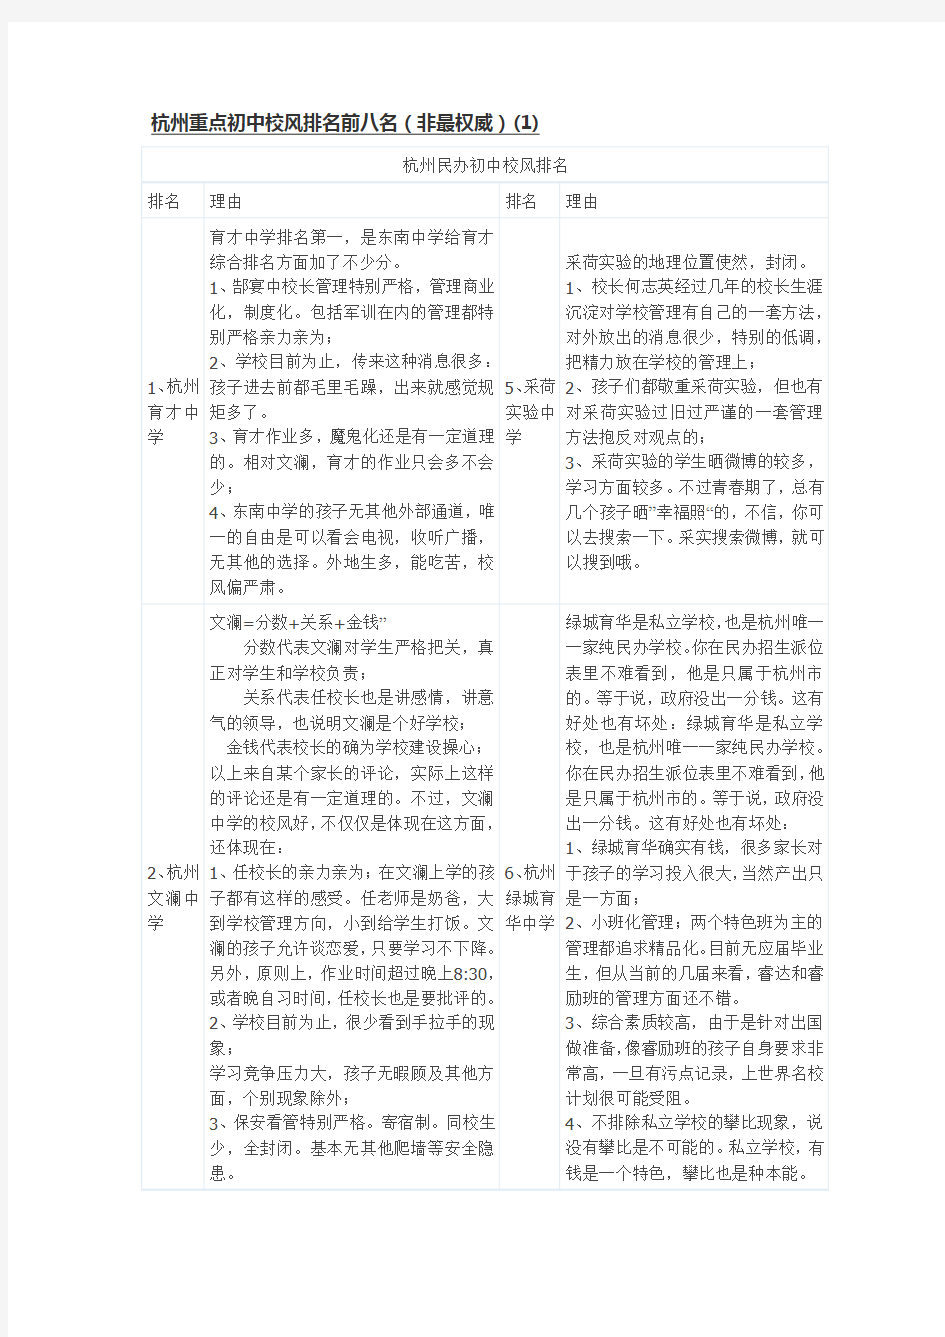 杭州重点初中校风排名前八名(非最权威)